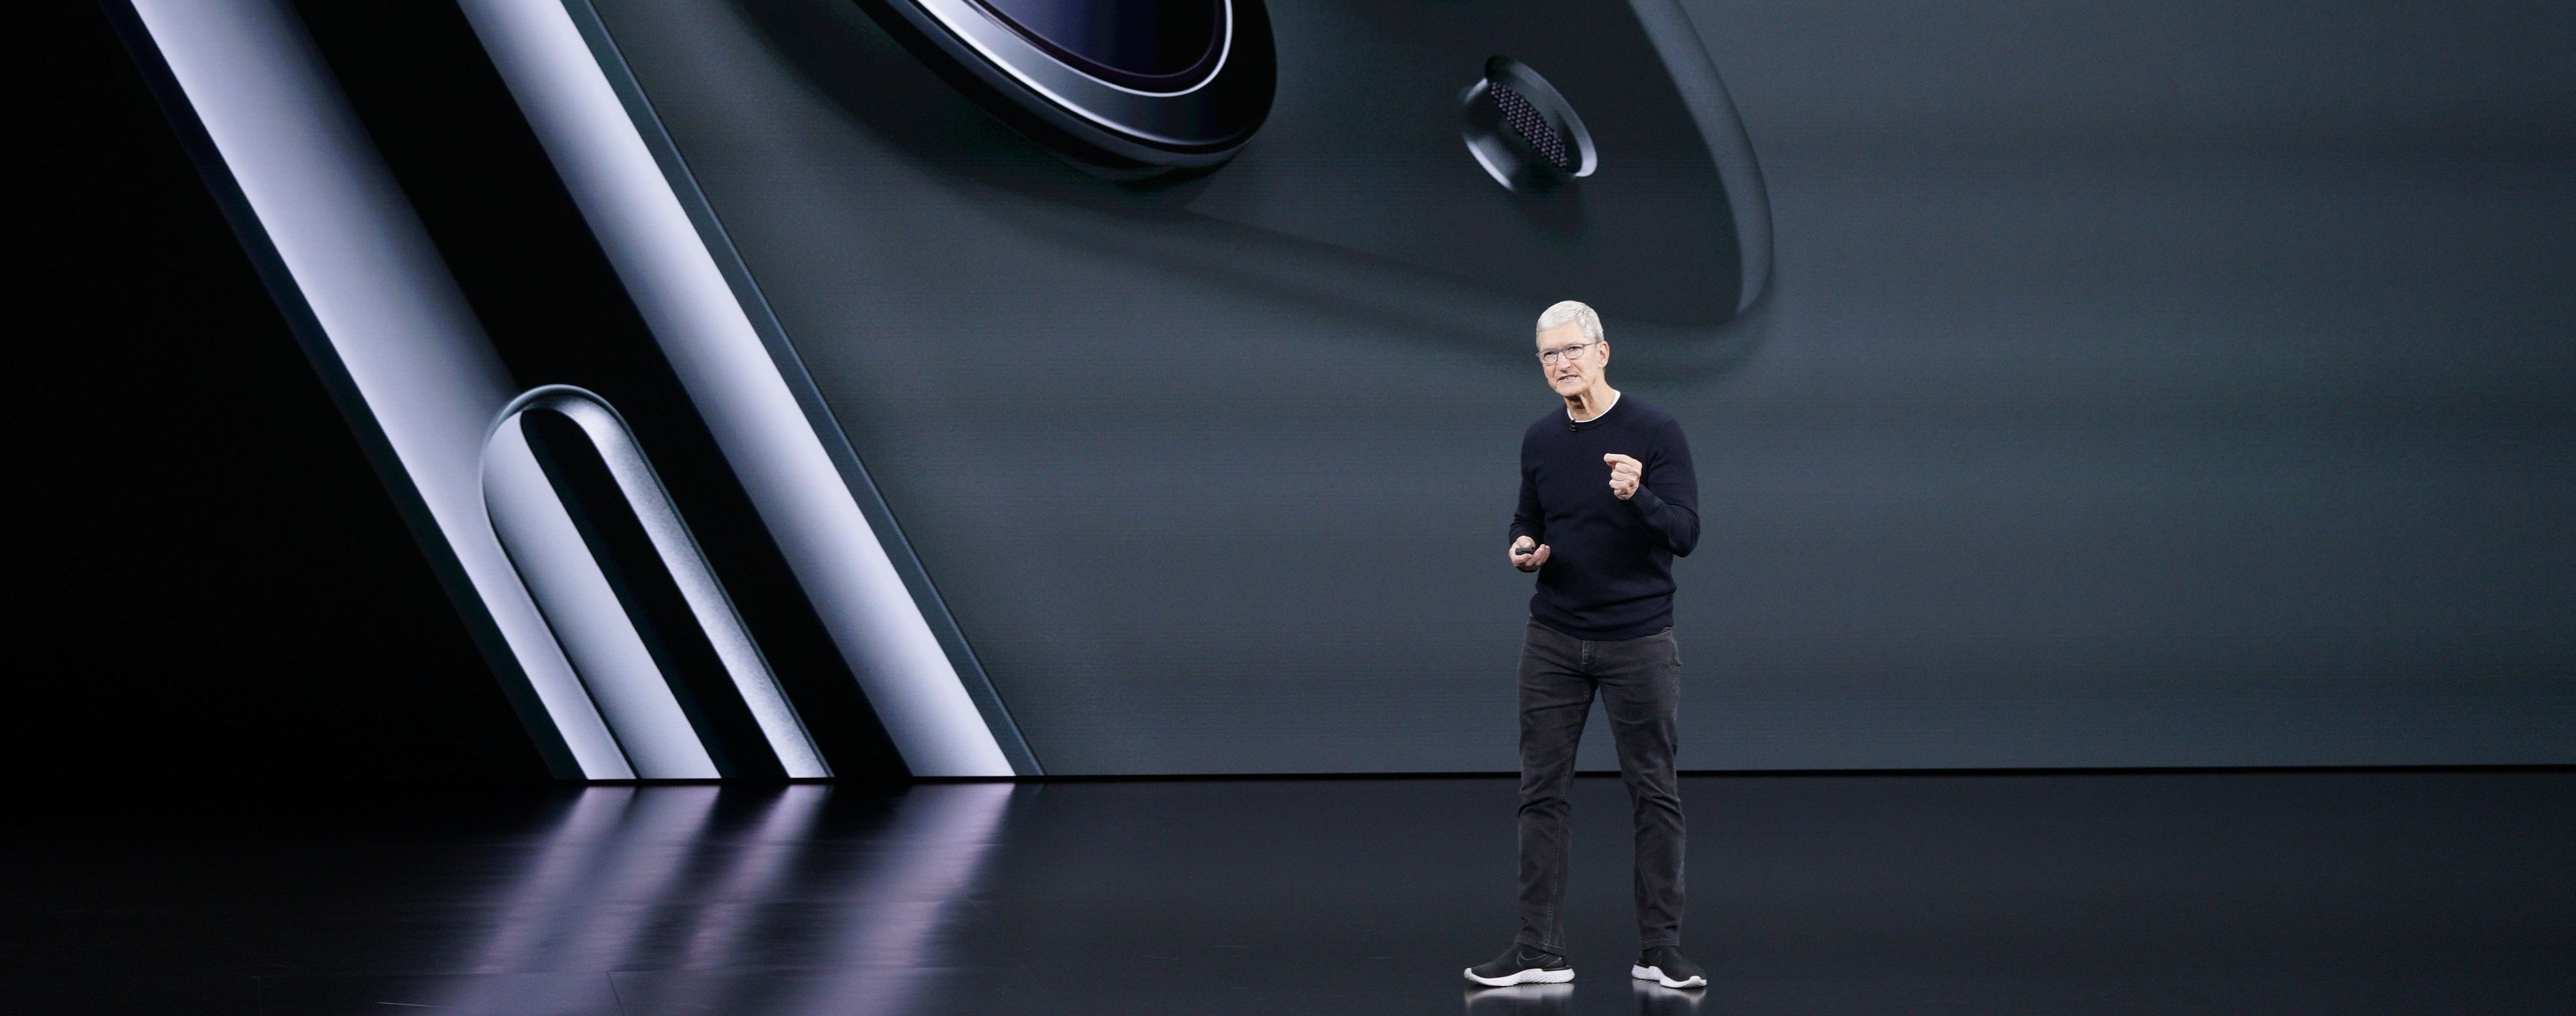 Apple презентувала нові моделі iPhone та інші гаджети. Текстова хроніка події